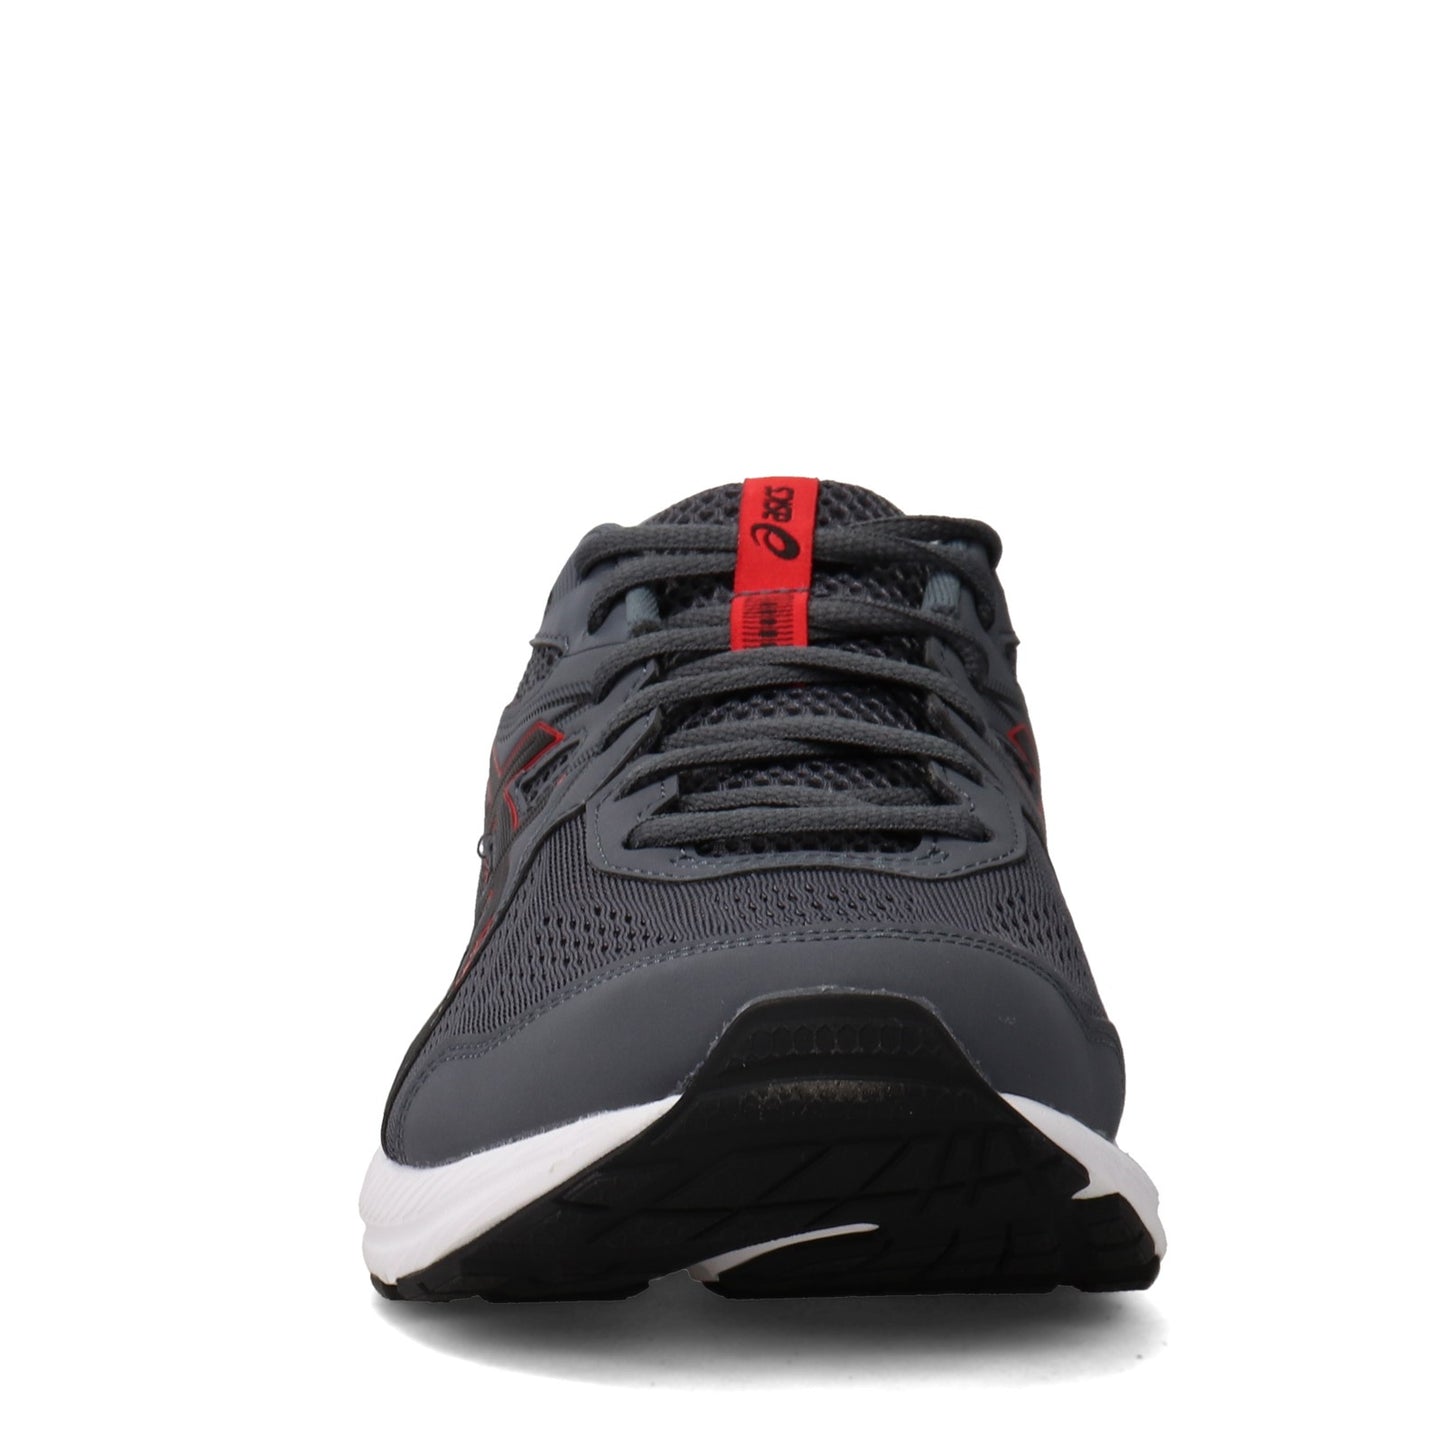 Peltz Shoes  Men's ASICS GEL-Contend 7 Running Shoe - Extra Wide Width GREY RED 1011B039-020